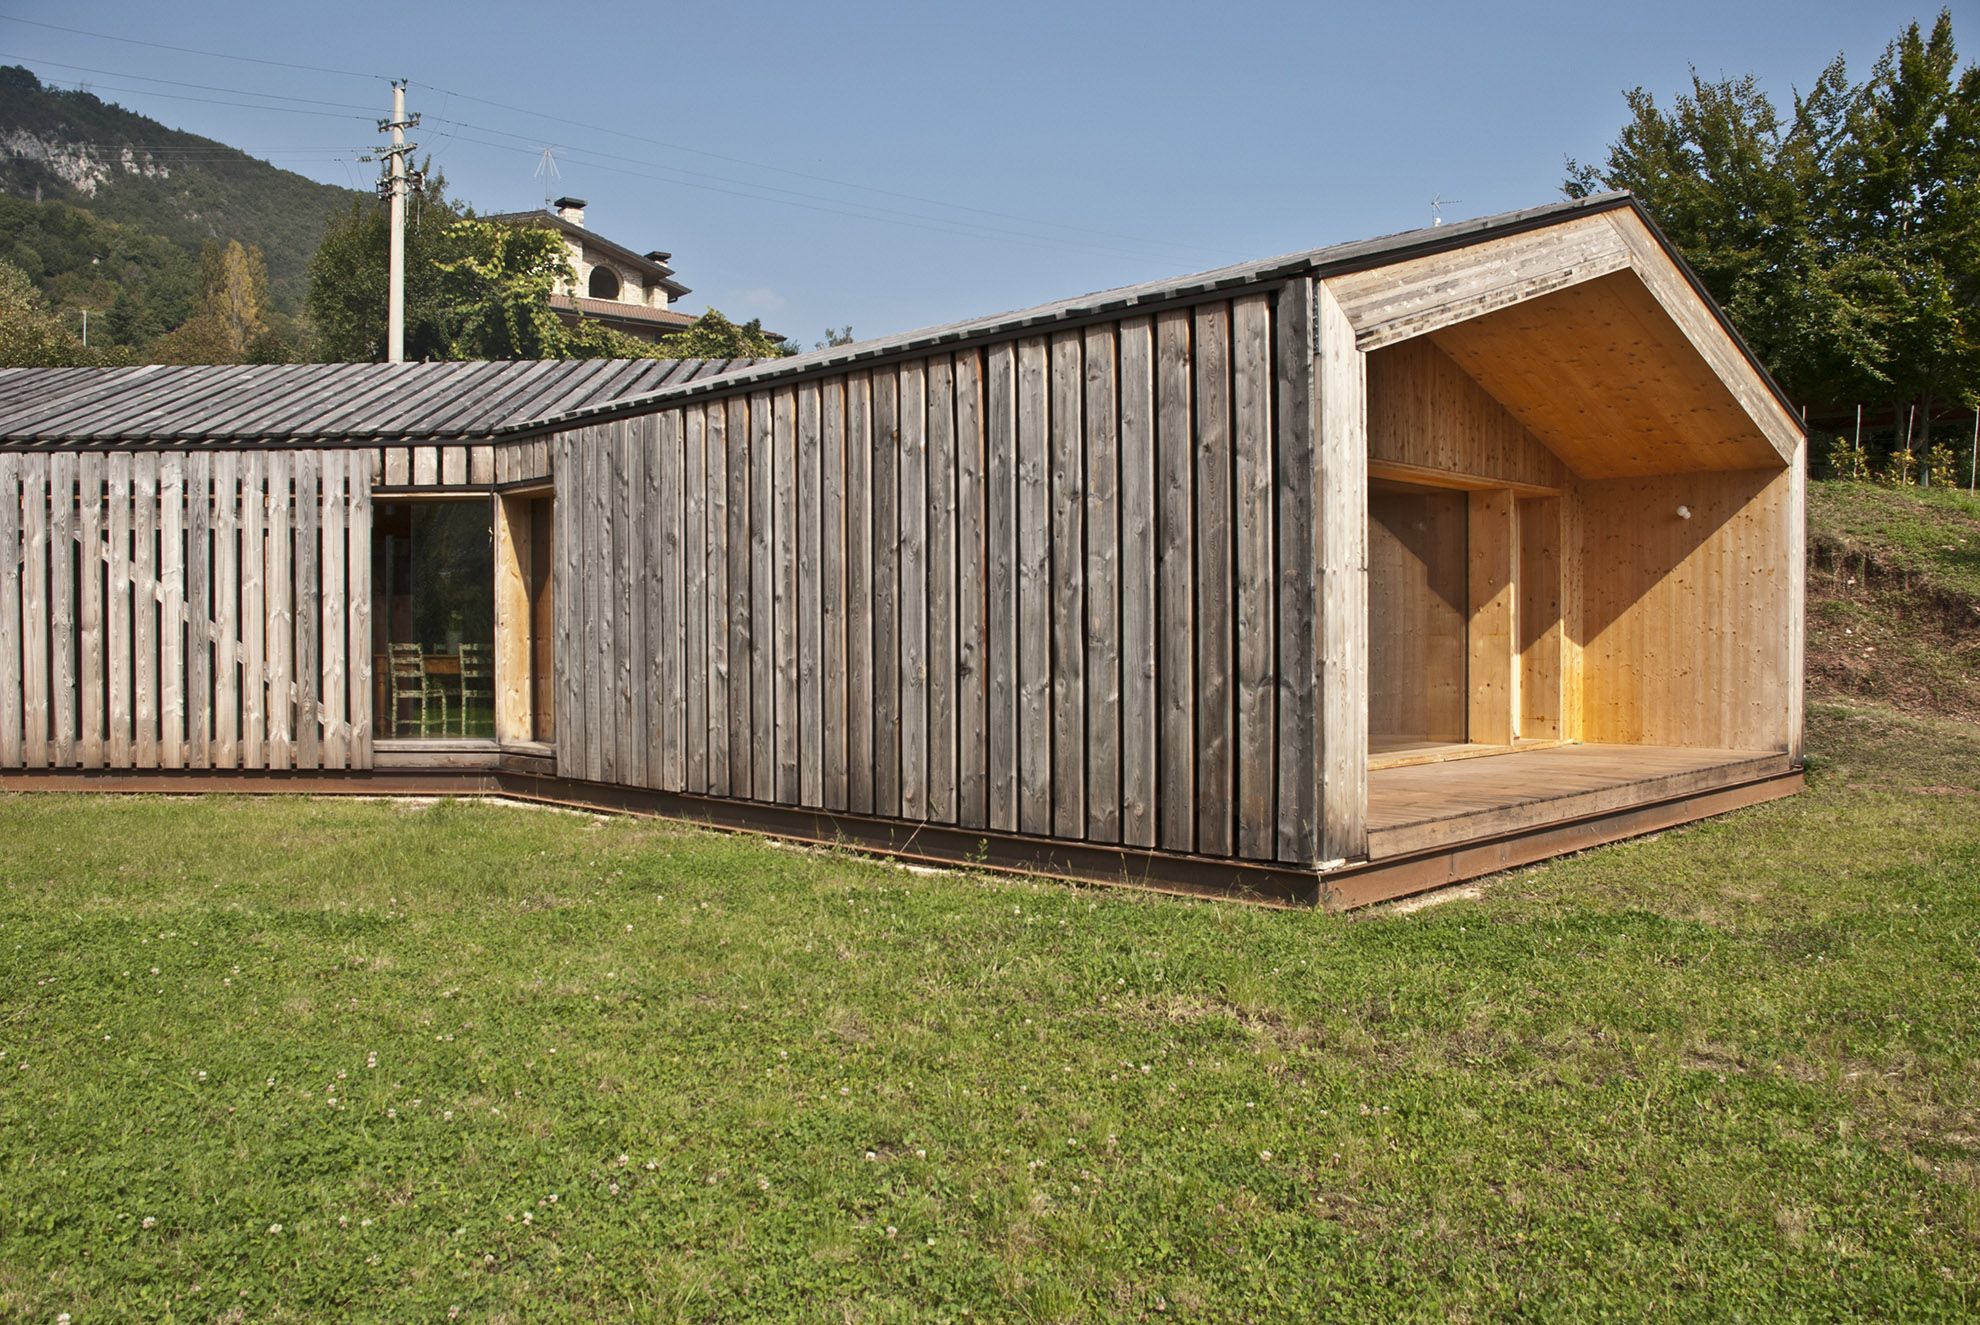 Casa in XLAM realizzato da Architetto Màrcio Tolotti, Assistenza tecnica a Verona